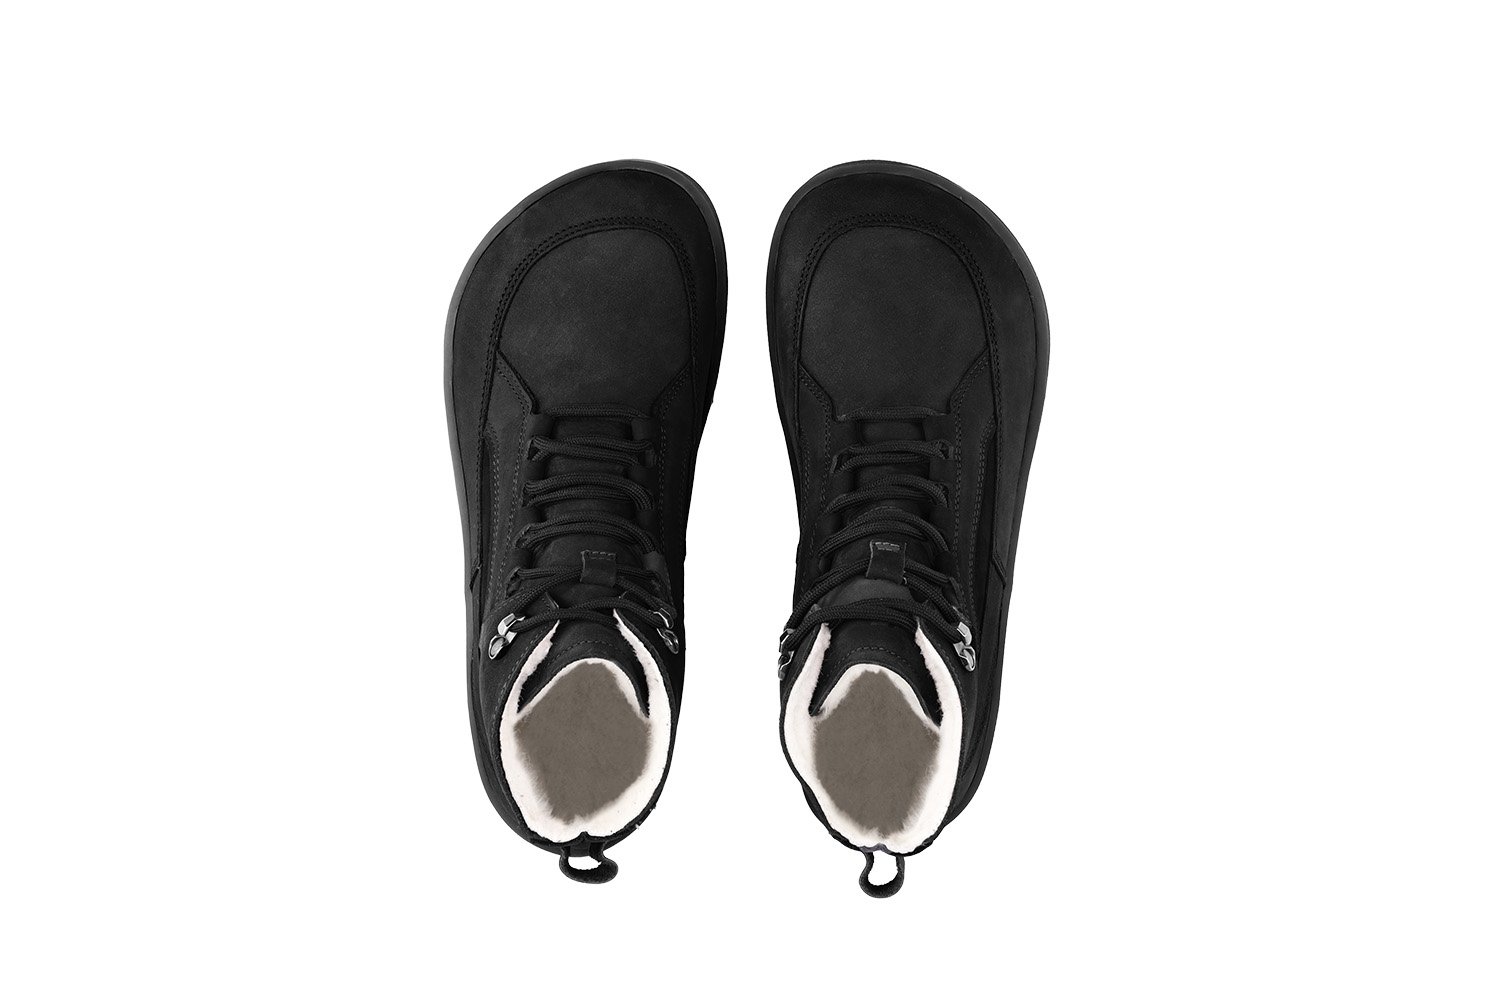 Barefoot Boots Be Lenka York - All Black | Be Lenka